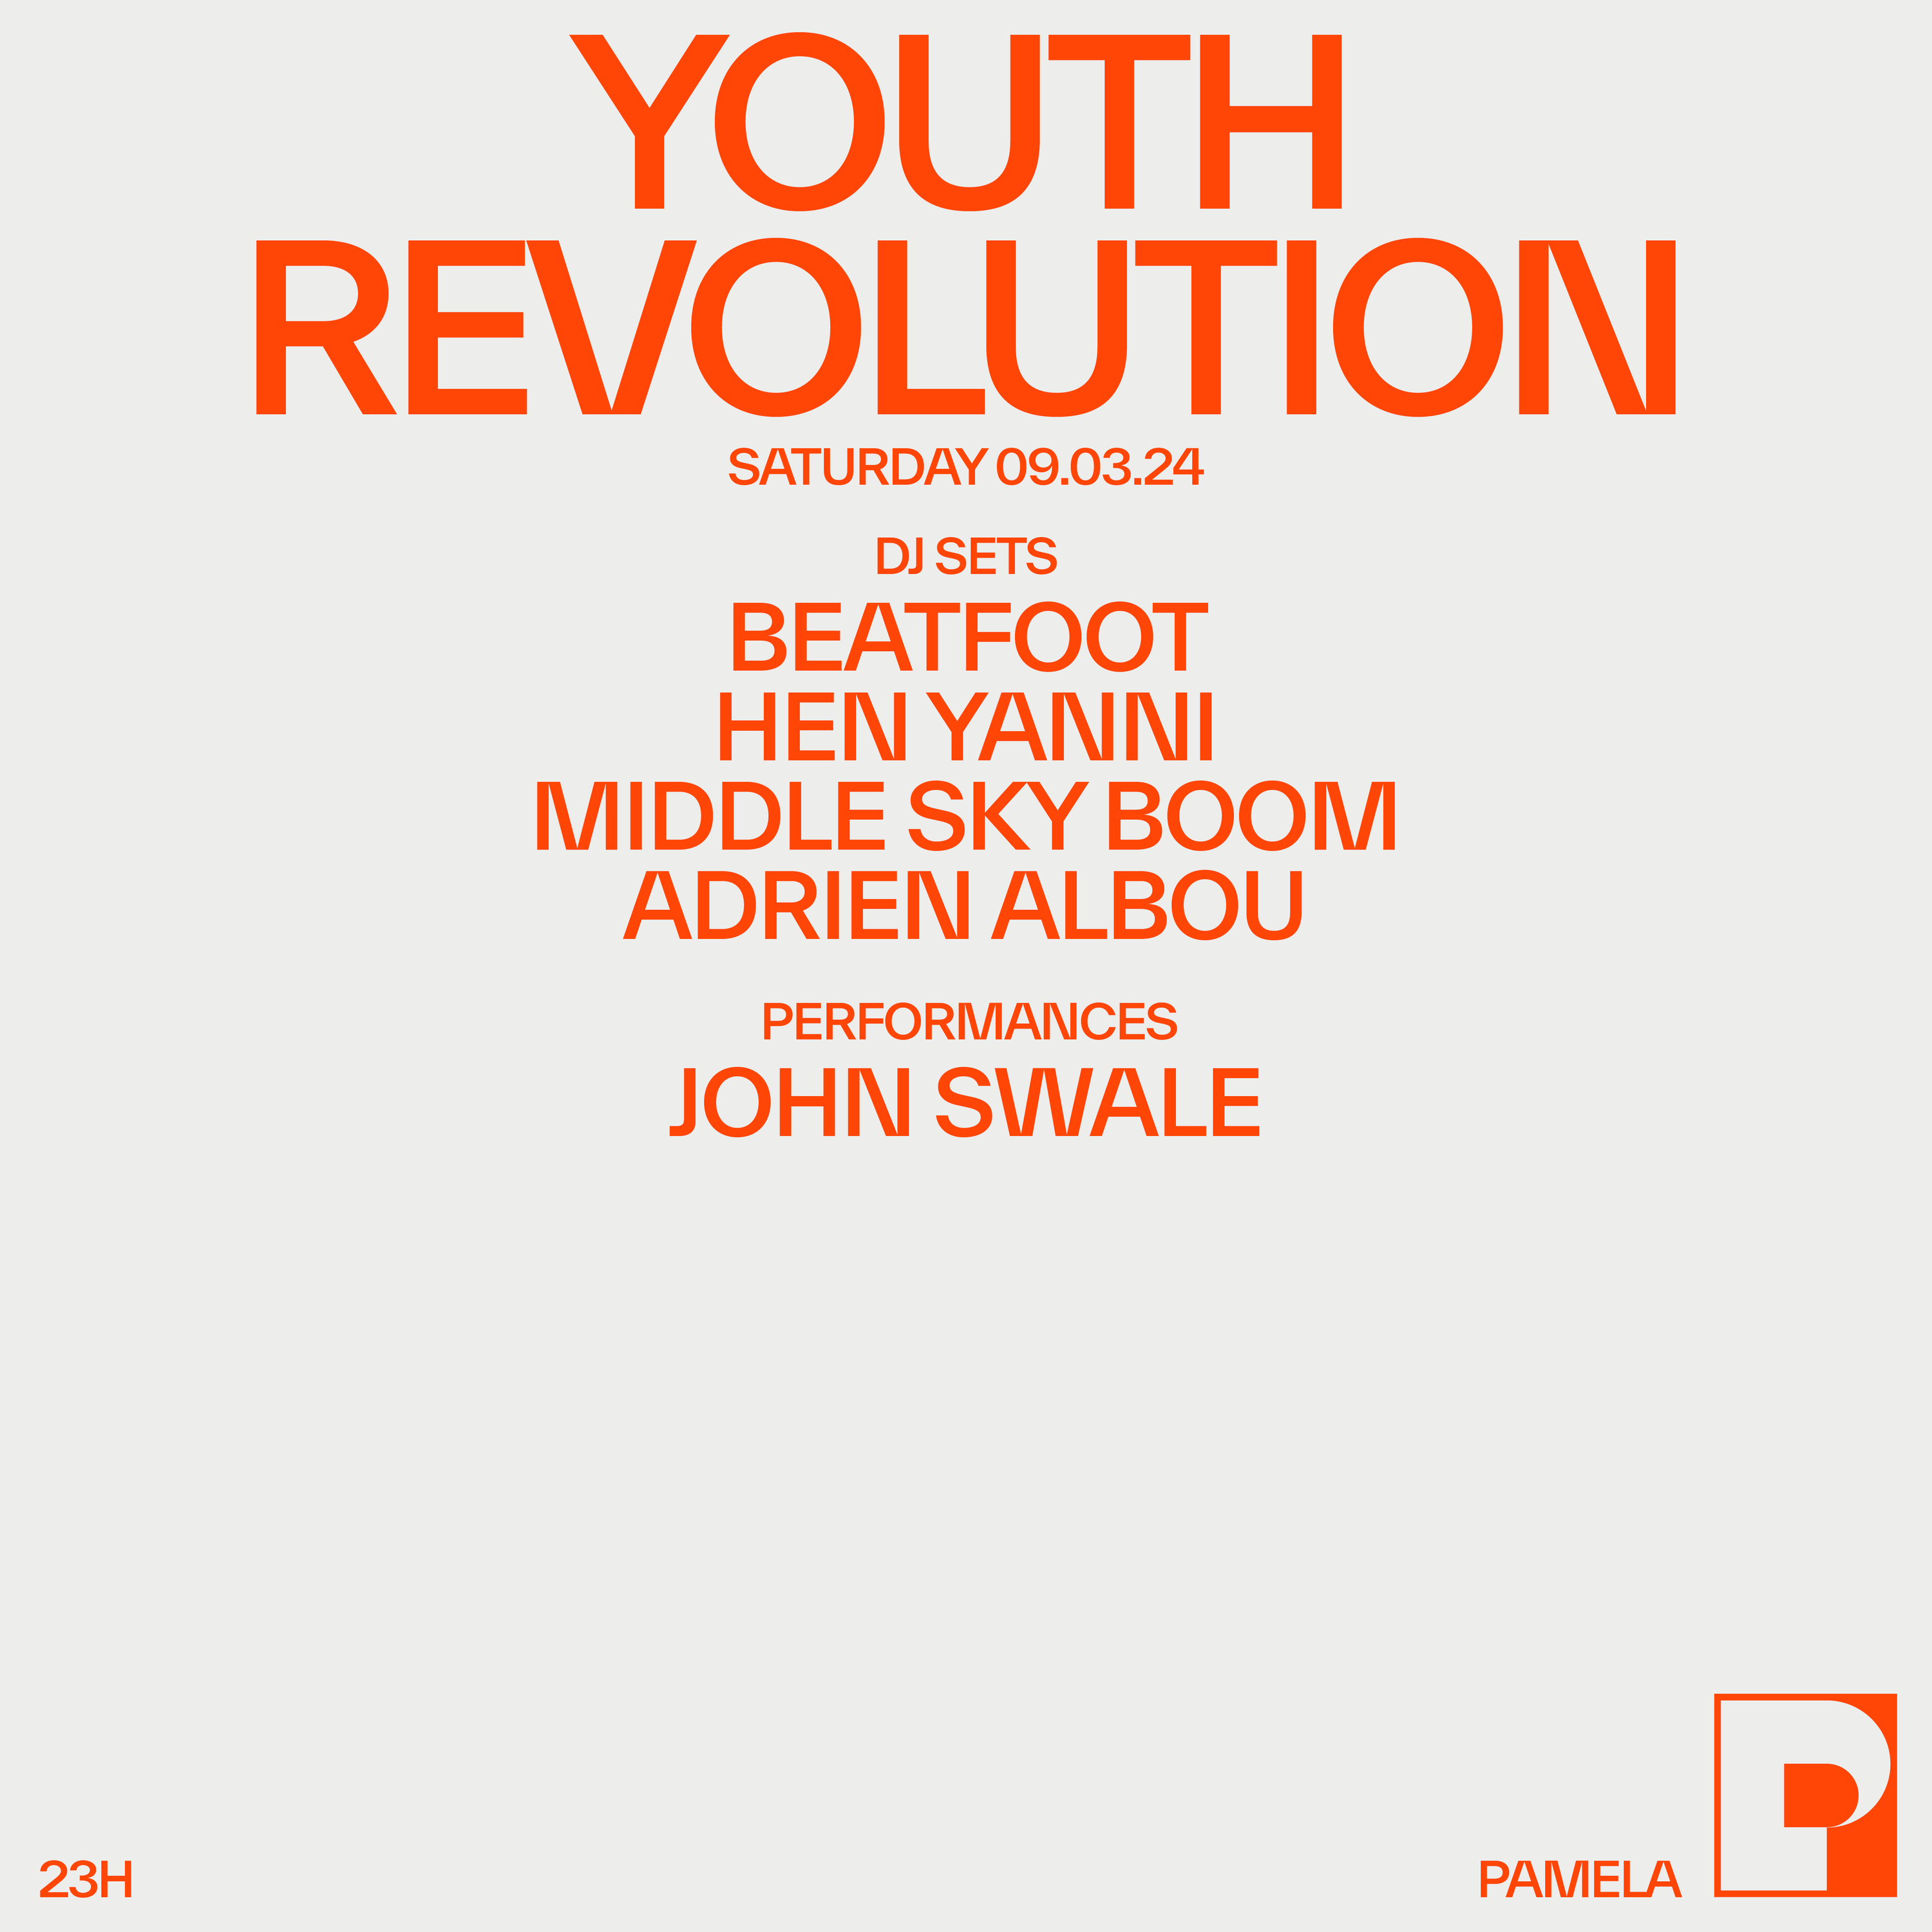 YOUTH REVOLUTION - Página frontal